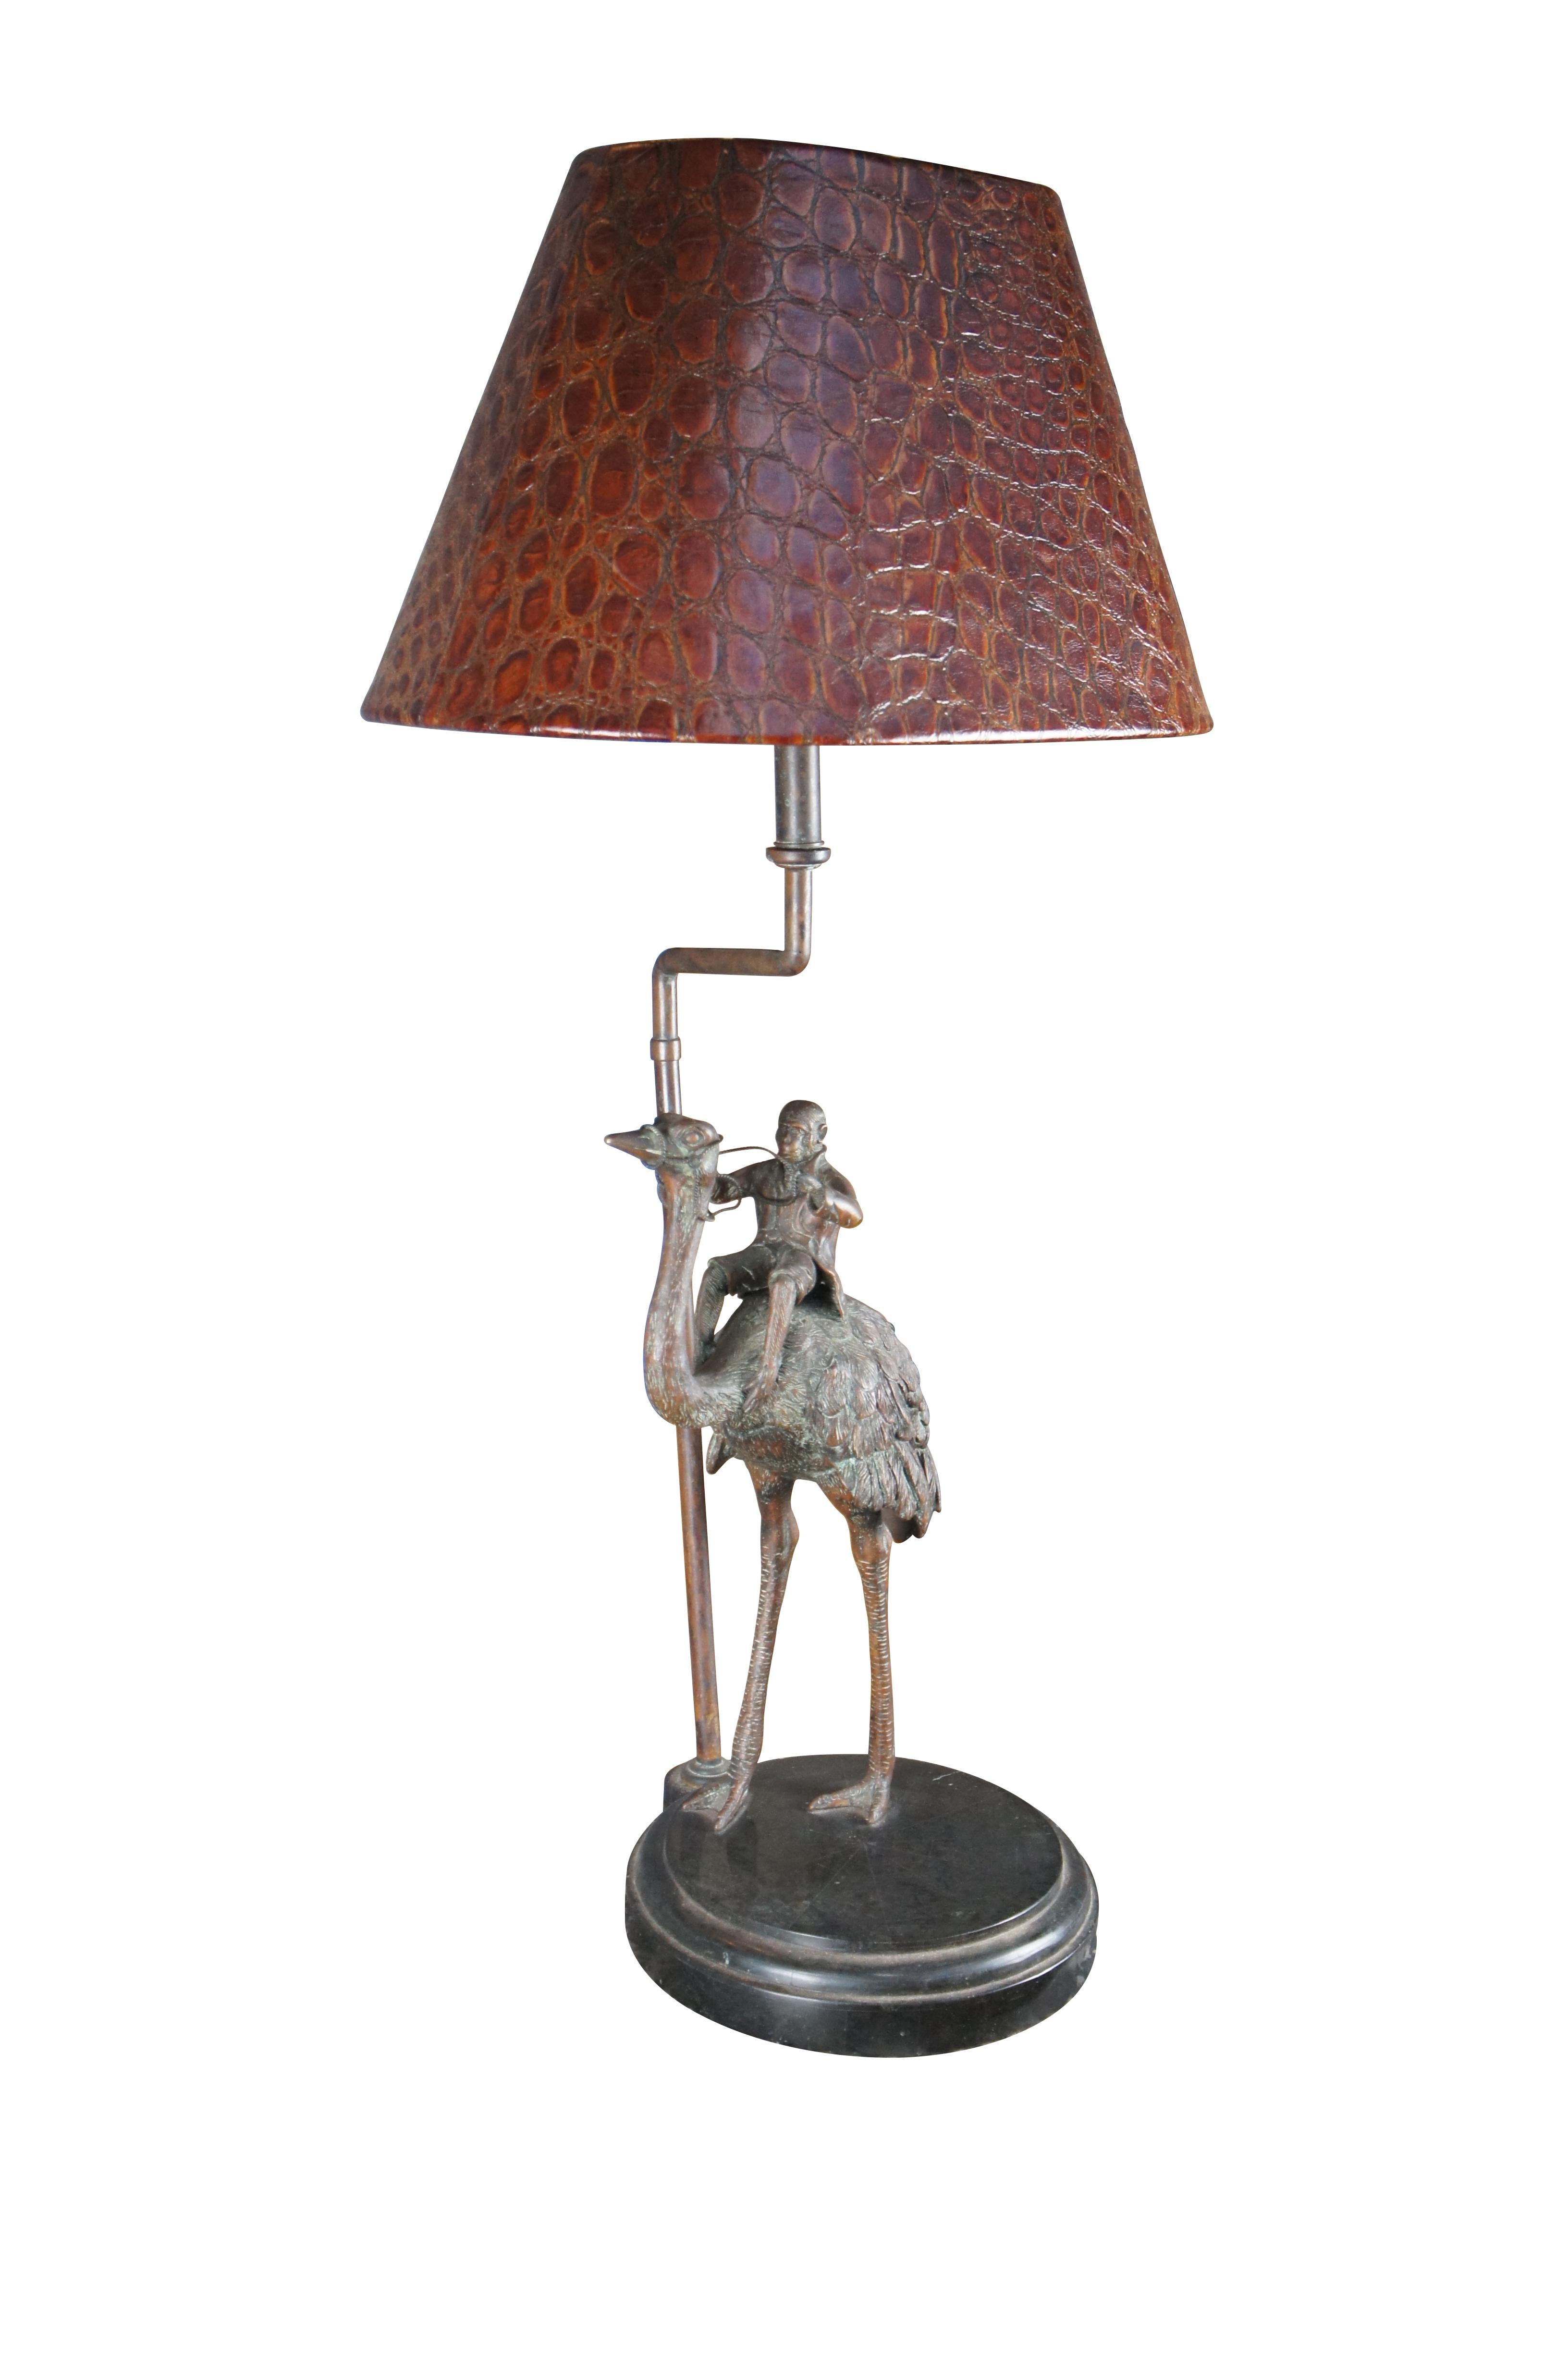 Eine charmante Tischlampe von Maitland Smith aus dem späten 20. Jahrhundert. Mit einem bronzenen Strauß, der einen Affen trägt. Die Bronze steht auf einem runden, mosaikartigen Marmorsockel und umfasst einen Schirm aus geprägtem